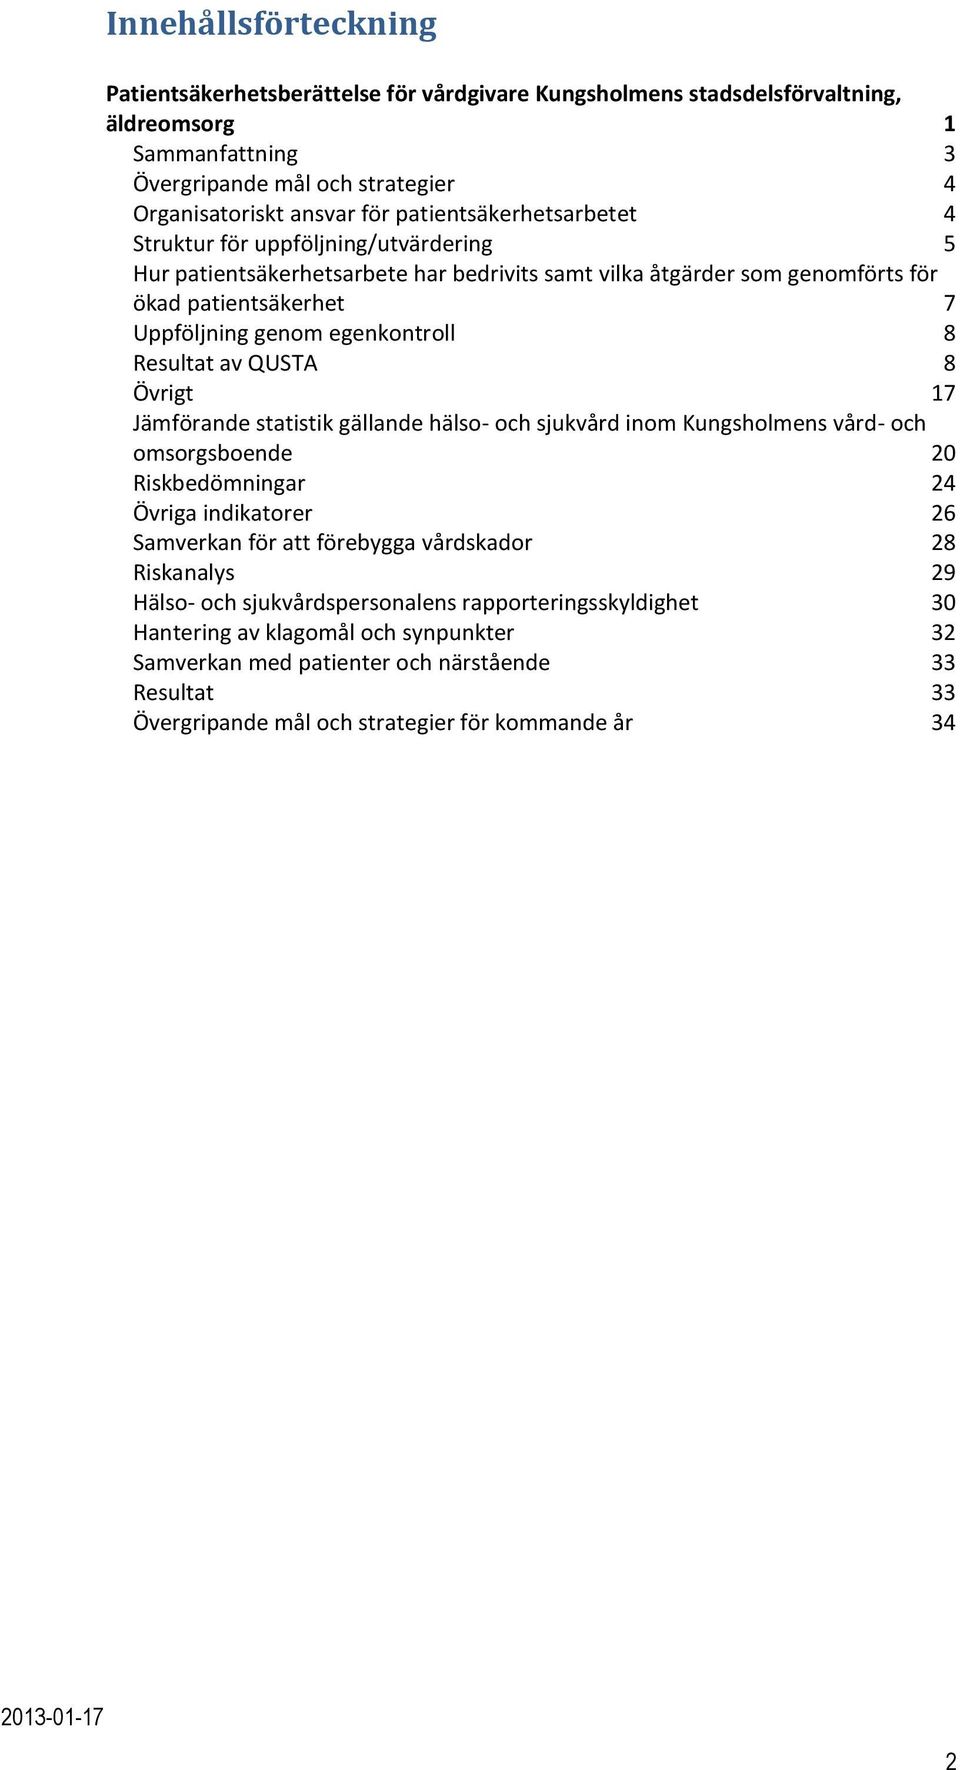 8 Resultat av QUSTA 8 Övrigt 17 Jämförande statistik gällande hälso- och sjukvård inom Kungsholmens vård- och omsorgsboende 20 Riskbedömningar 24 Övriga indikatorer 26 Samverkan för att förebygga